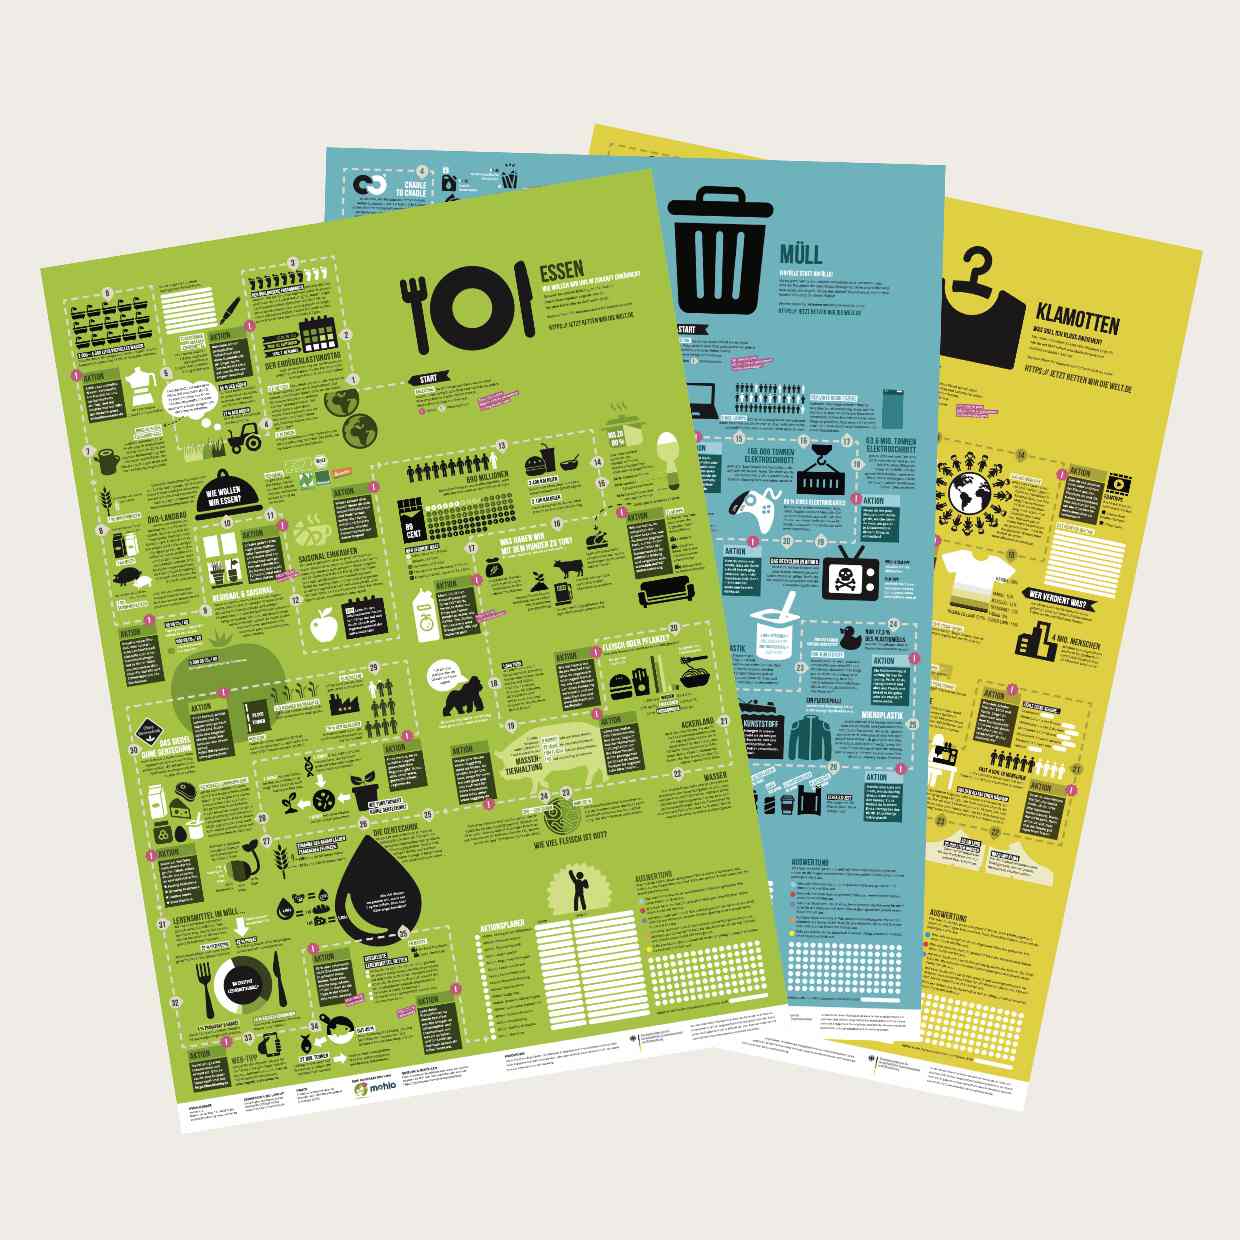 Die drei Wandelplakate auf einen Blick: Essen, Müll und Klamotten